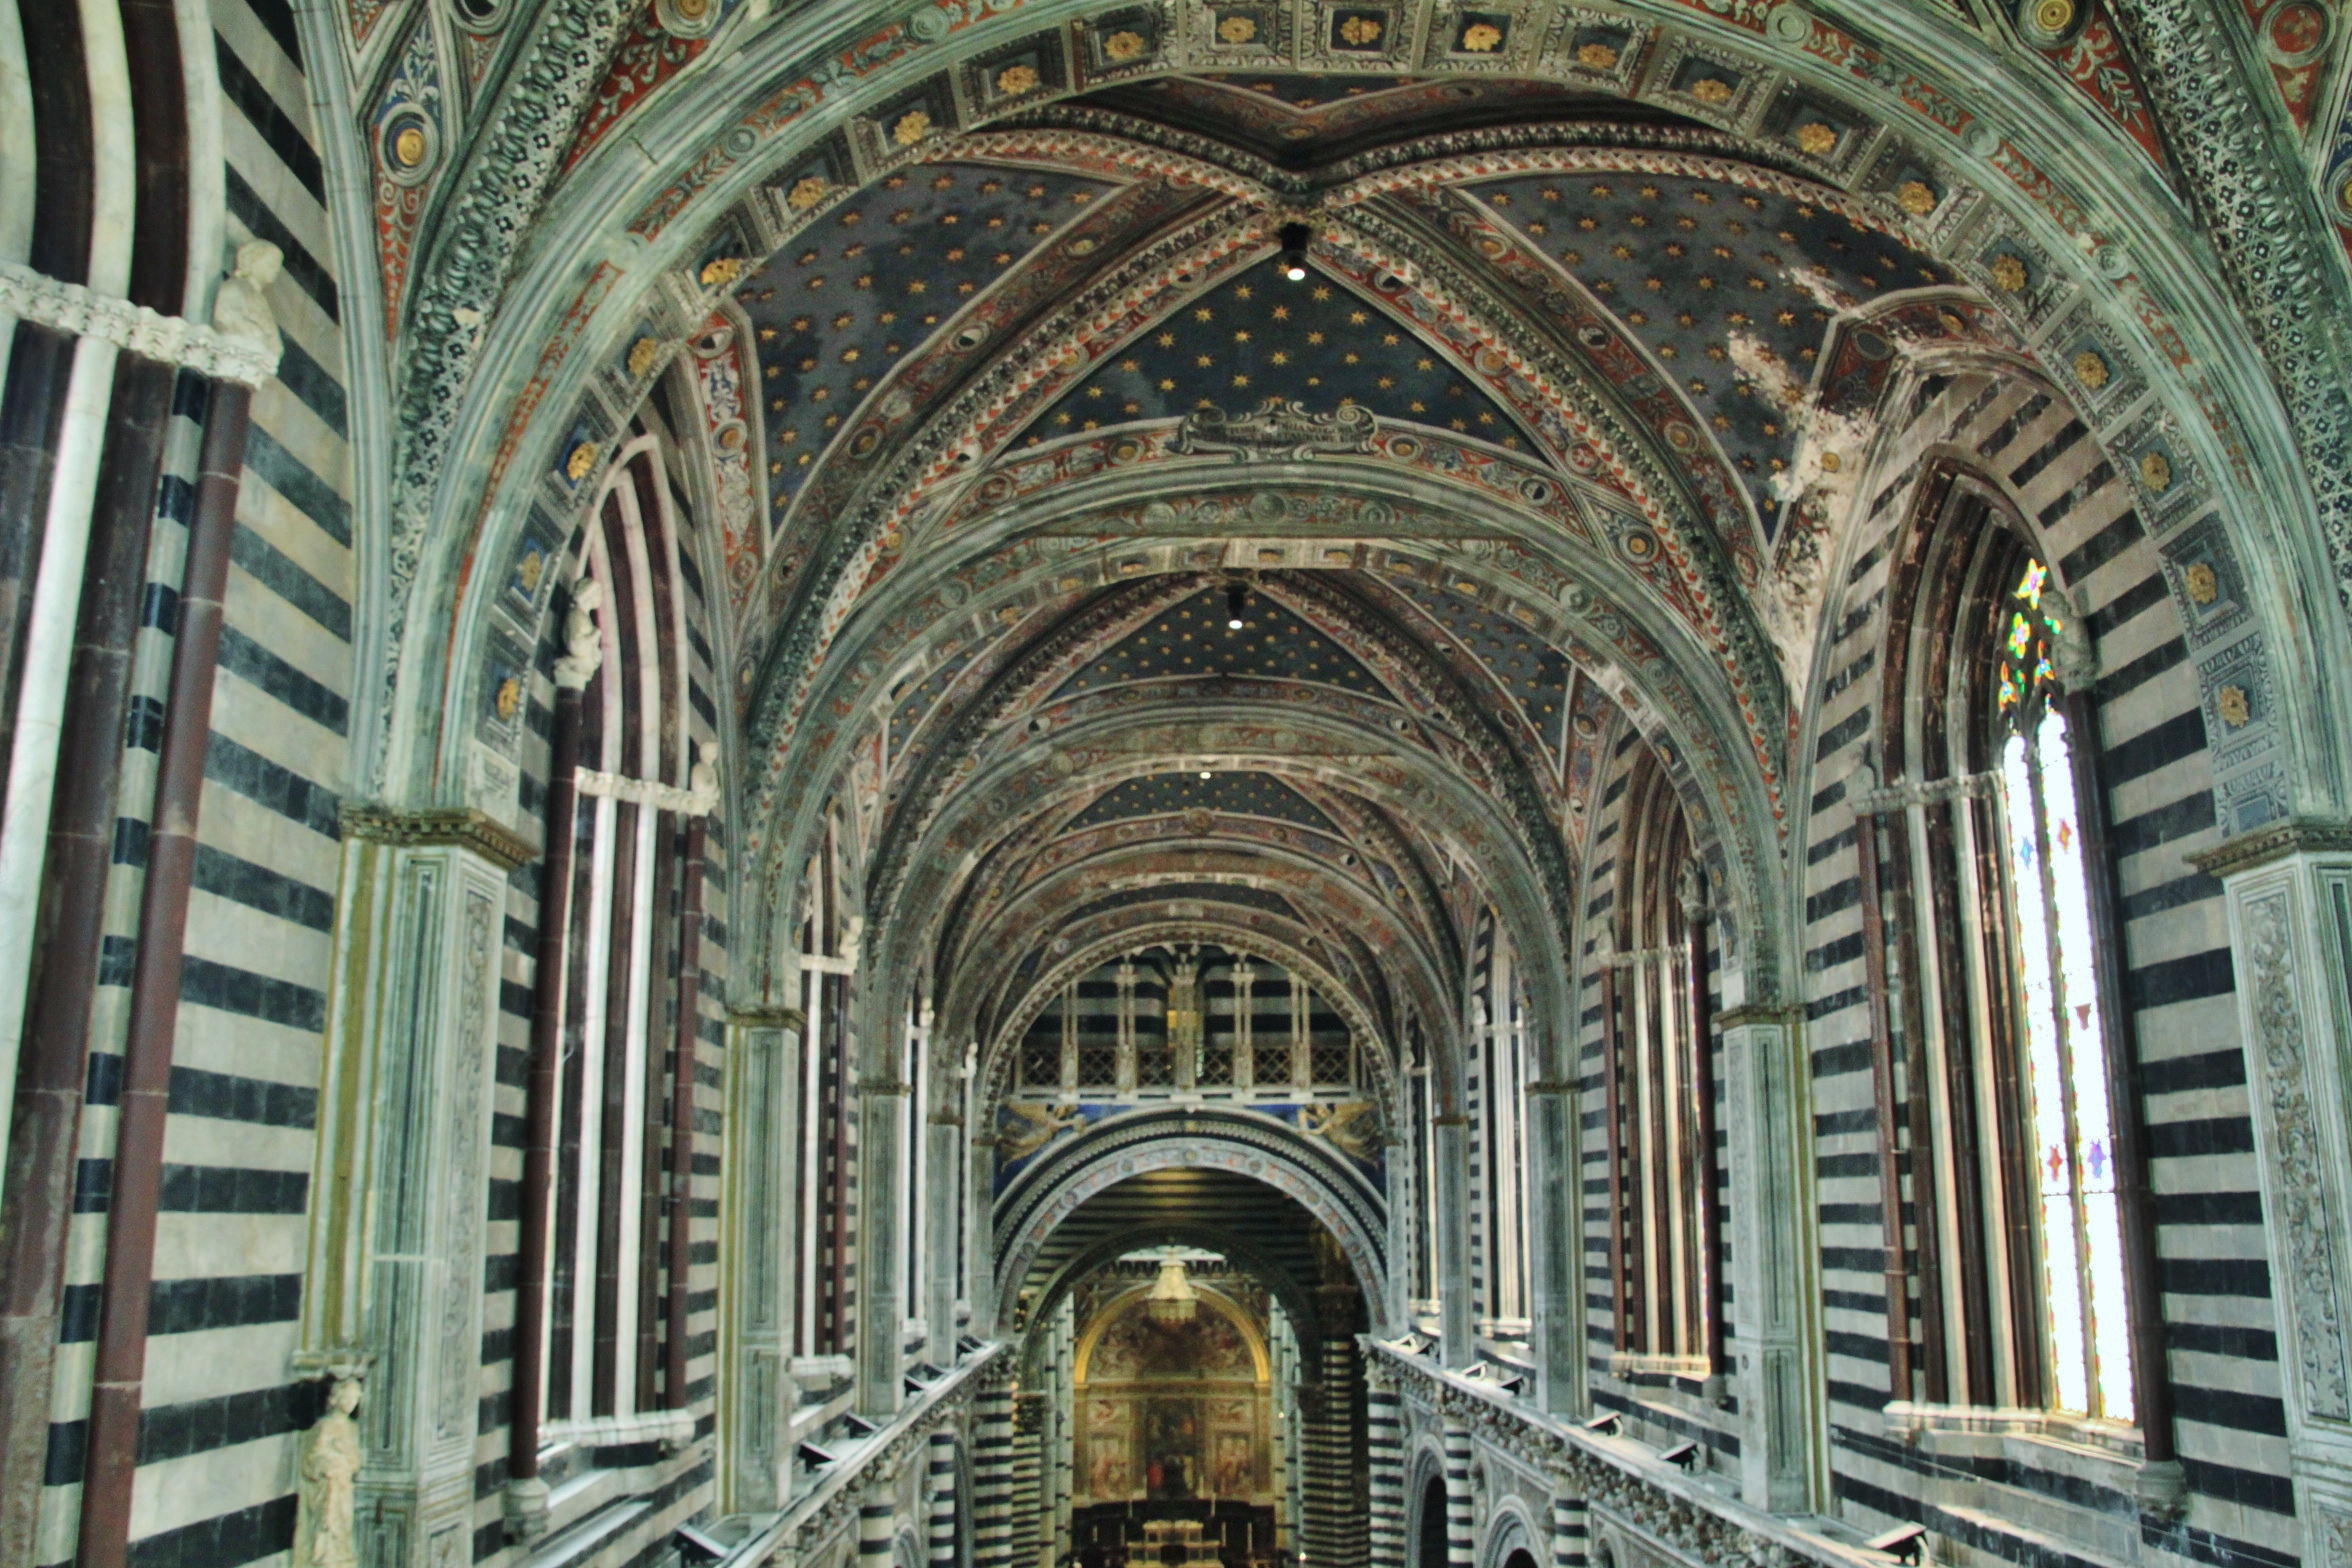 Foto: Vistas desde el techo de la catedral - Siena (Tuscany), Italia